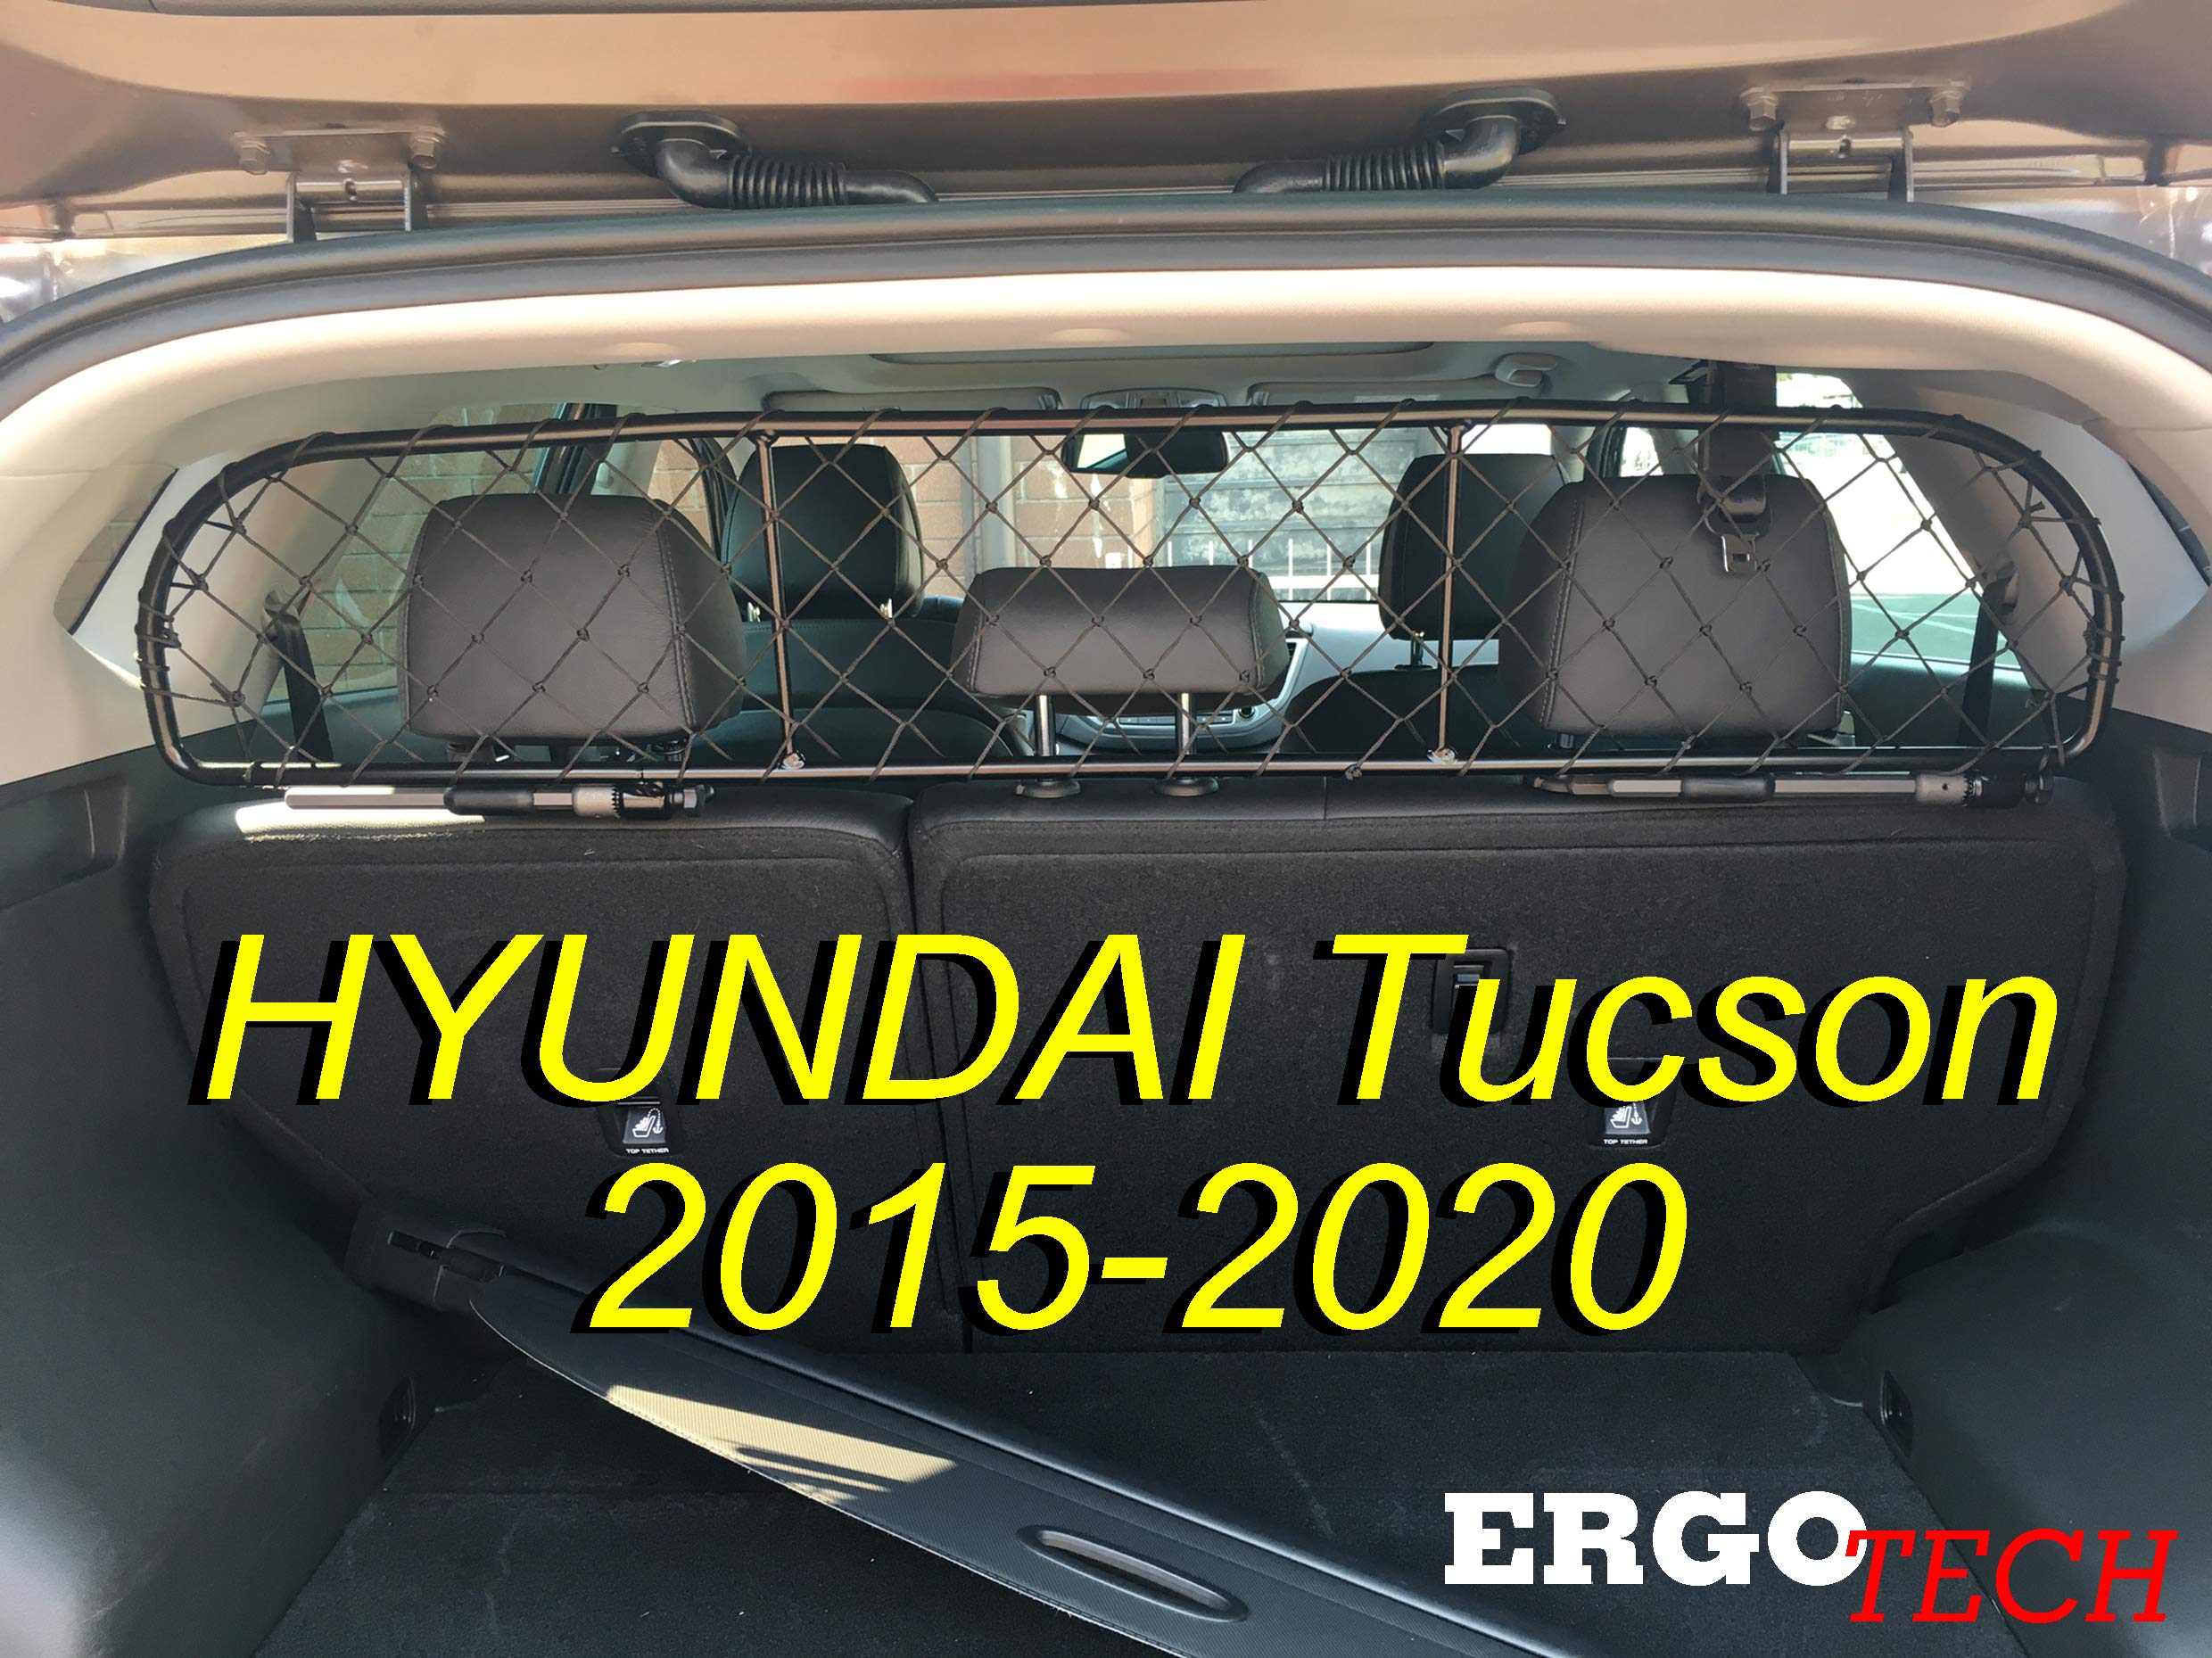 ERGOTECH Trennnetz Trenngitter kompatibel mit Hyundai Tucson (2015-2020) RDA65-XS16, für Hunde und Gepäck